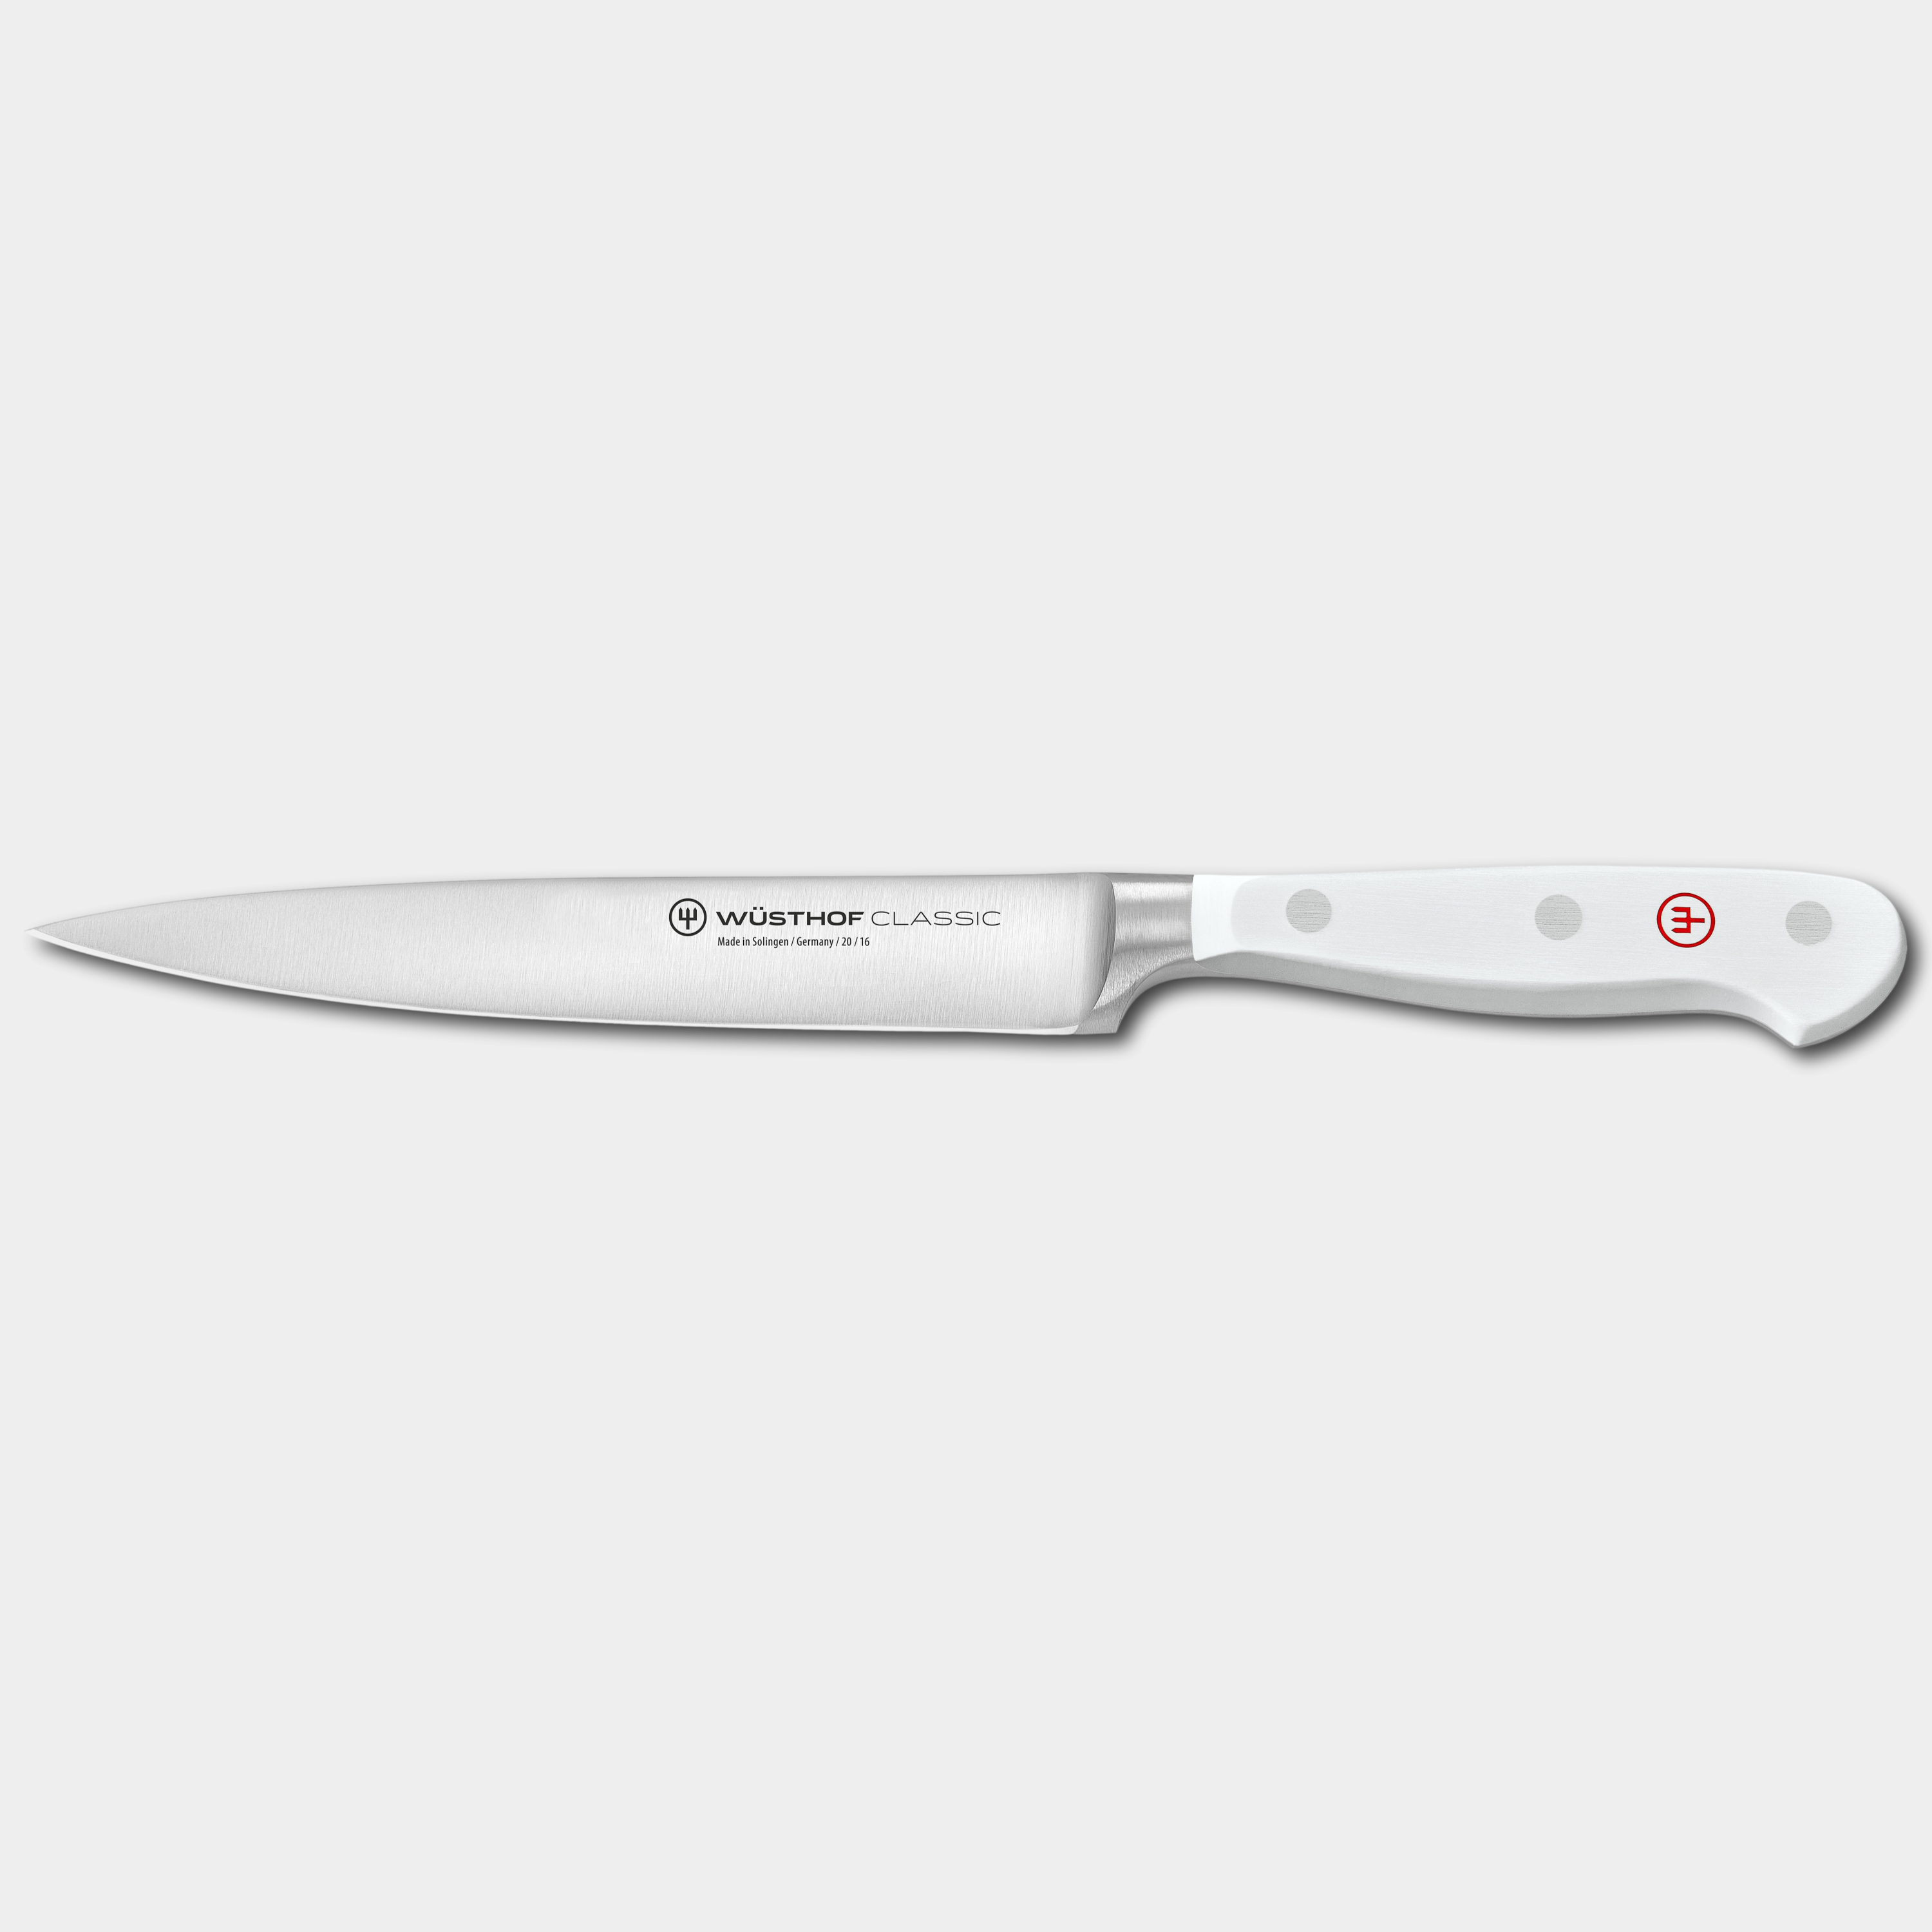 Wusthof Classic White 16cm Utility Knife